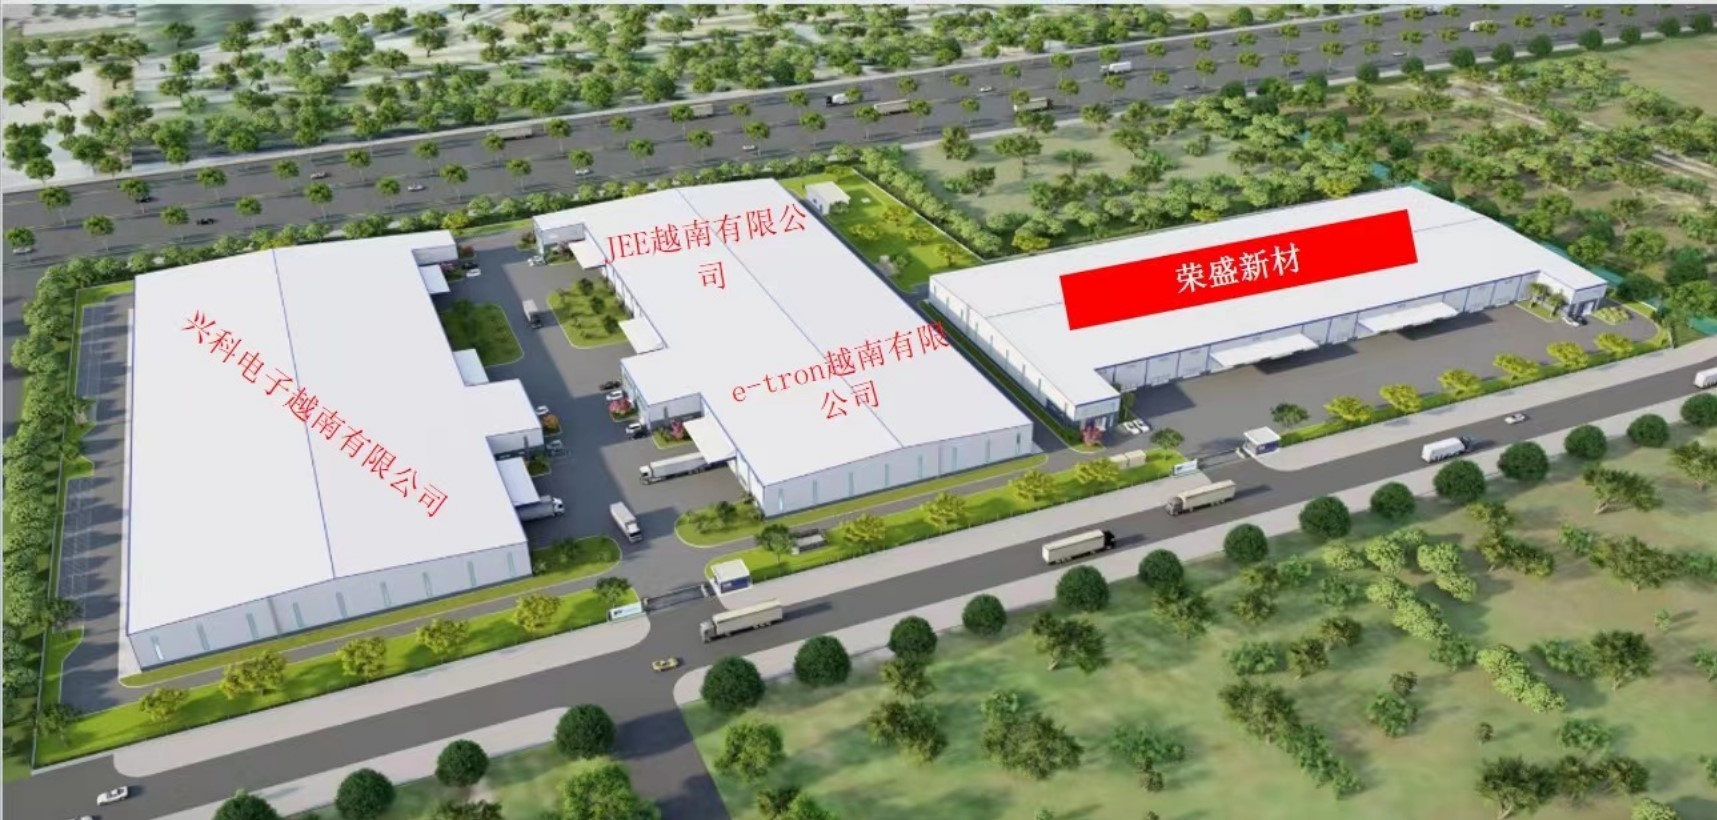 Shanghai Huitian New Material Co., Ltd কারখানা উত্পাদন লাইন